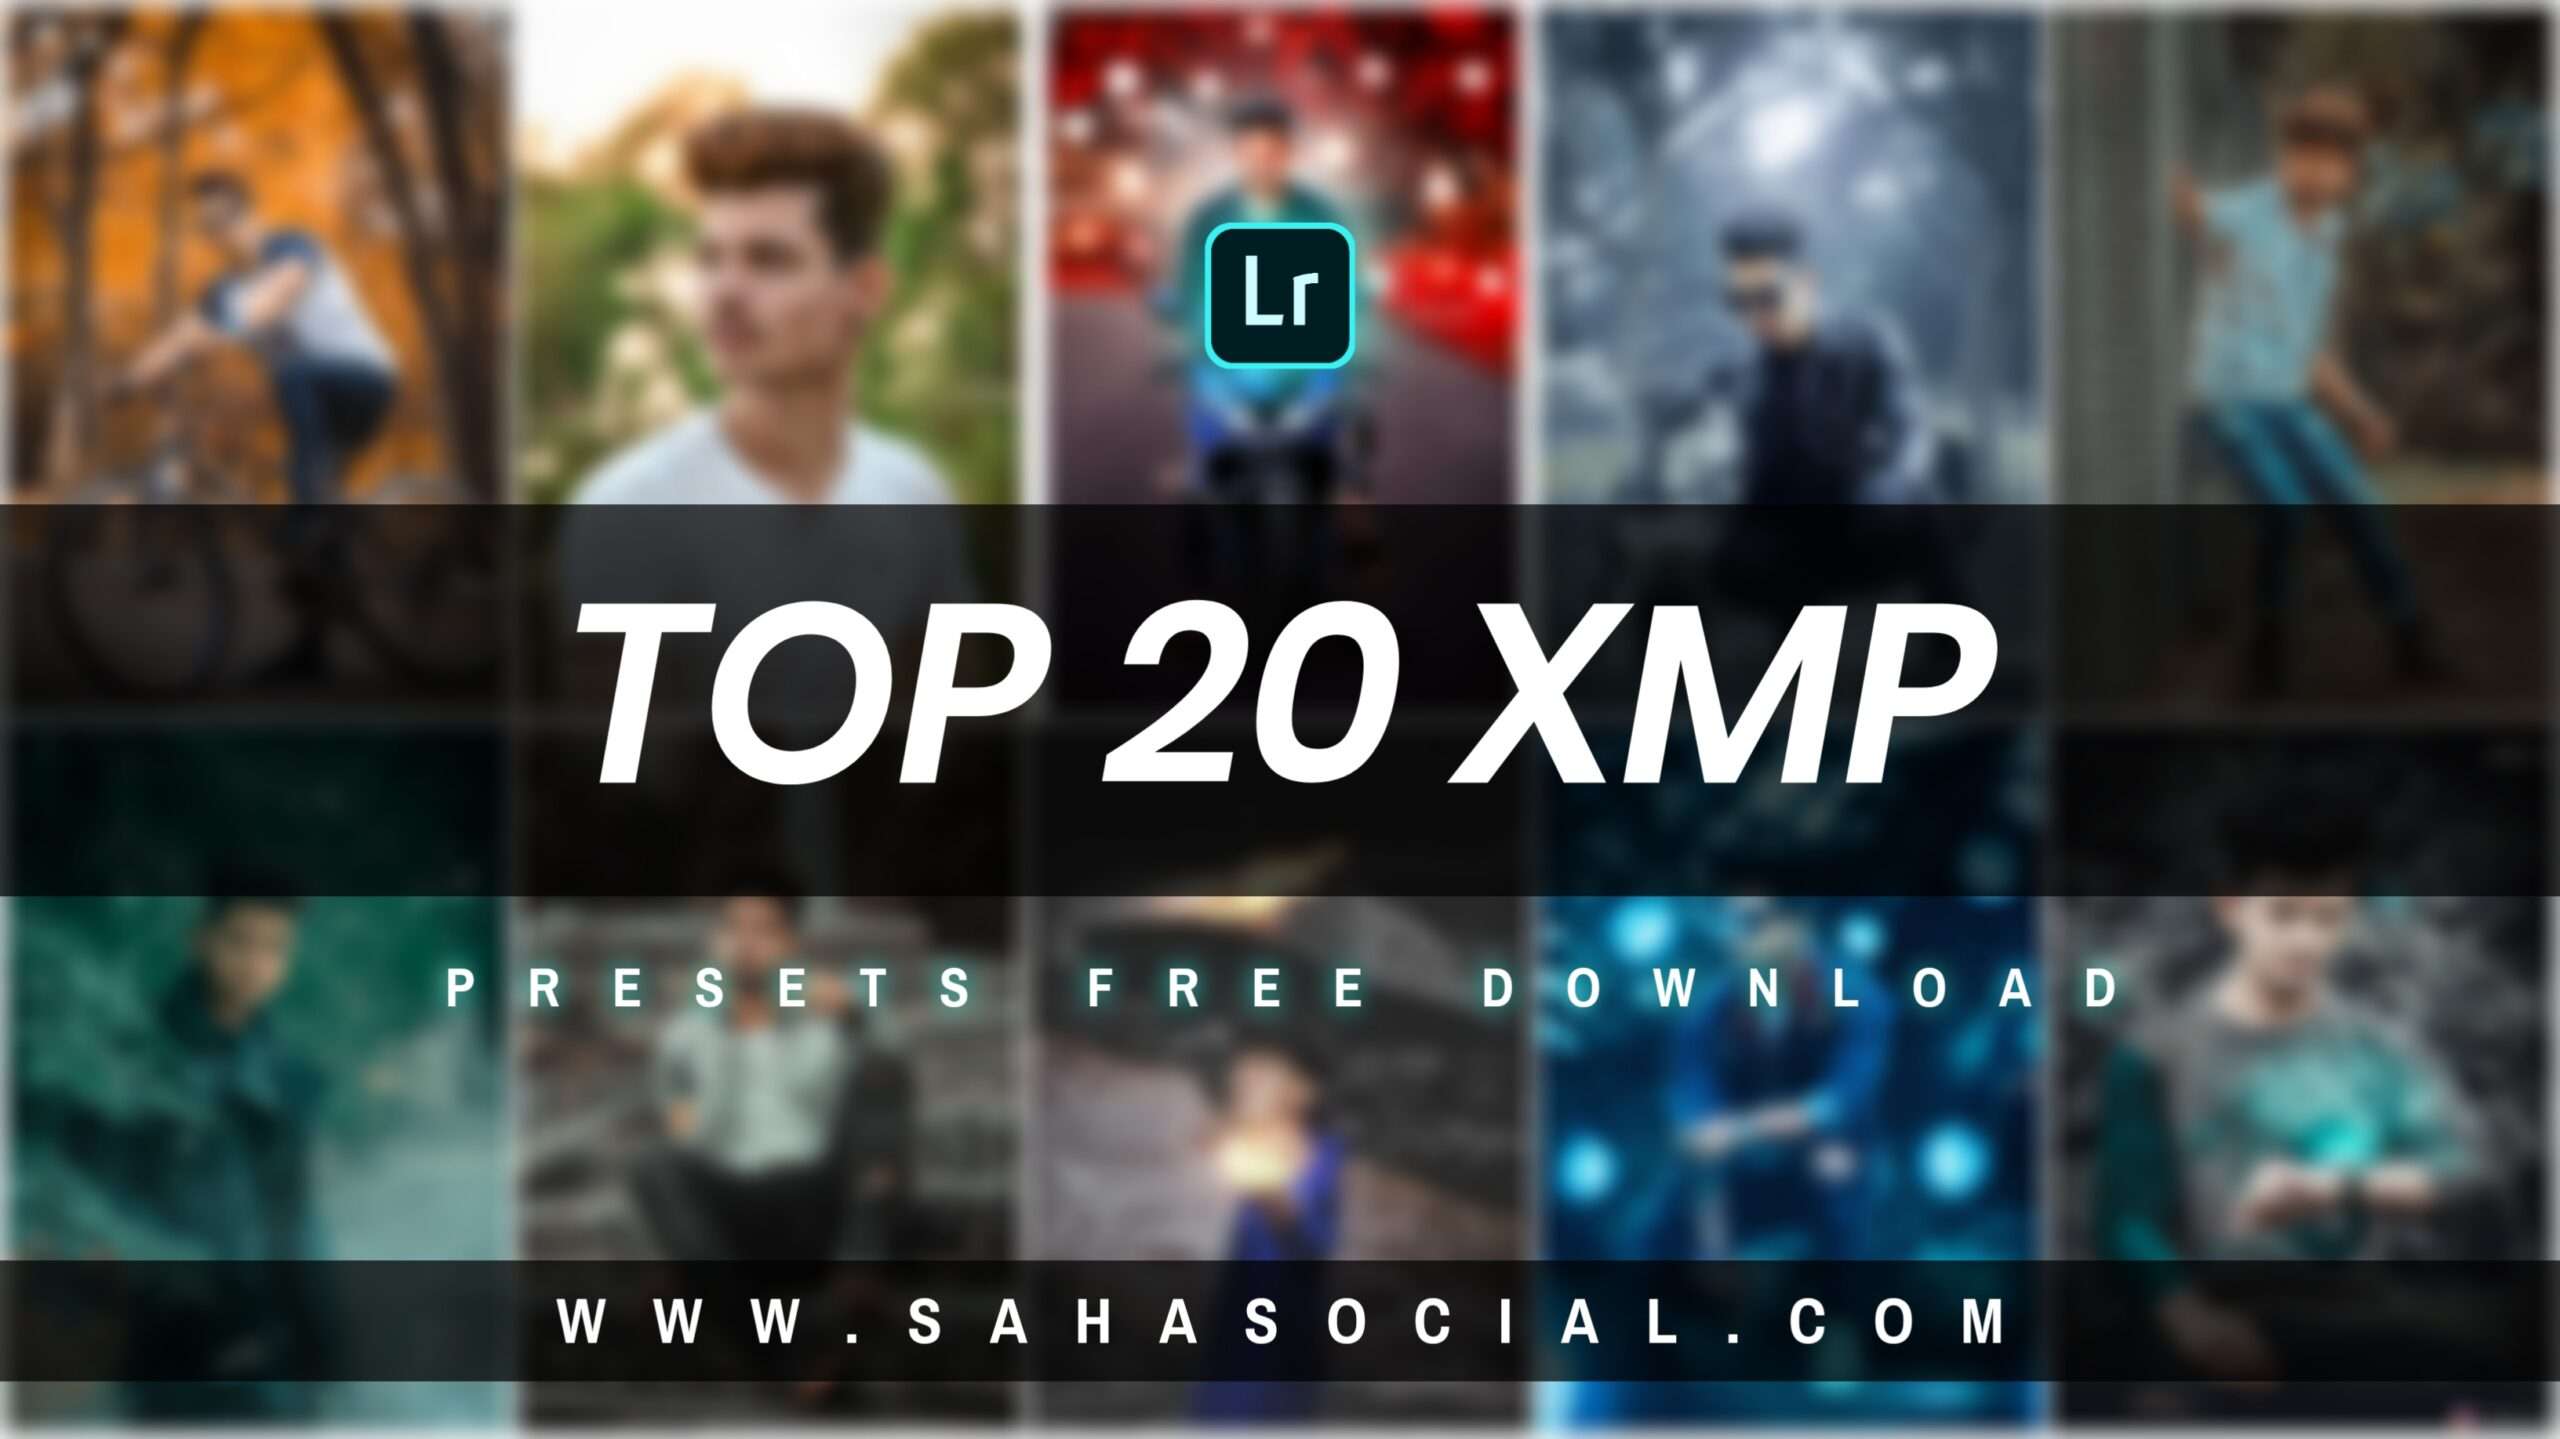 Top 20 XMP Lightroom Presets Free - Saha Social Presets